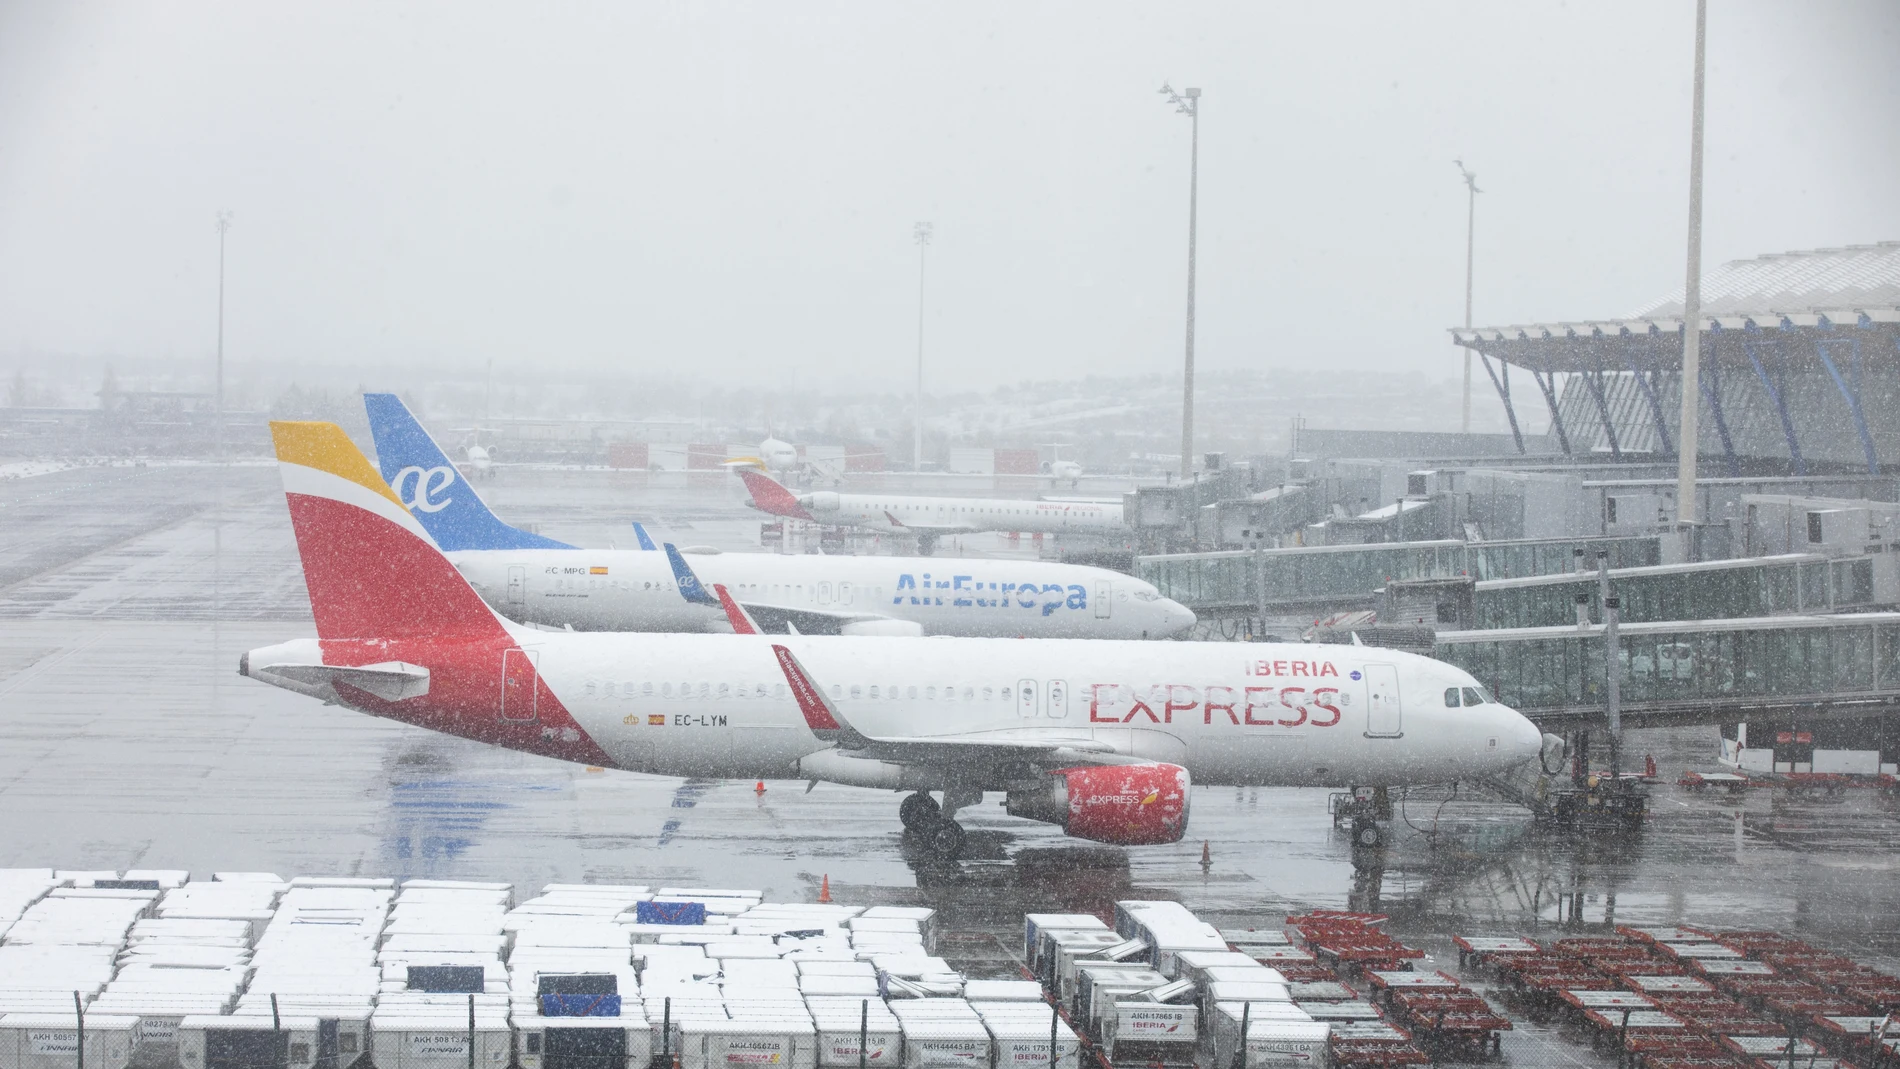  Imagen del aeropuerto Adolfo Suarez Madrid Barajas con aviones de Iberia y AirEuropa